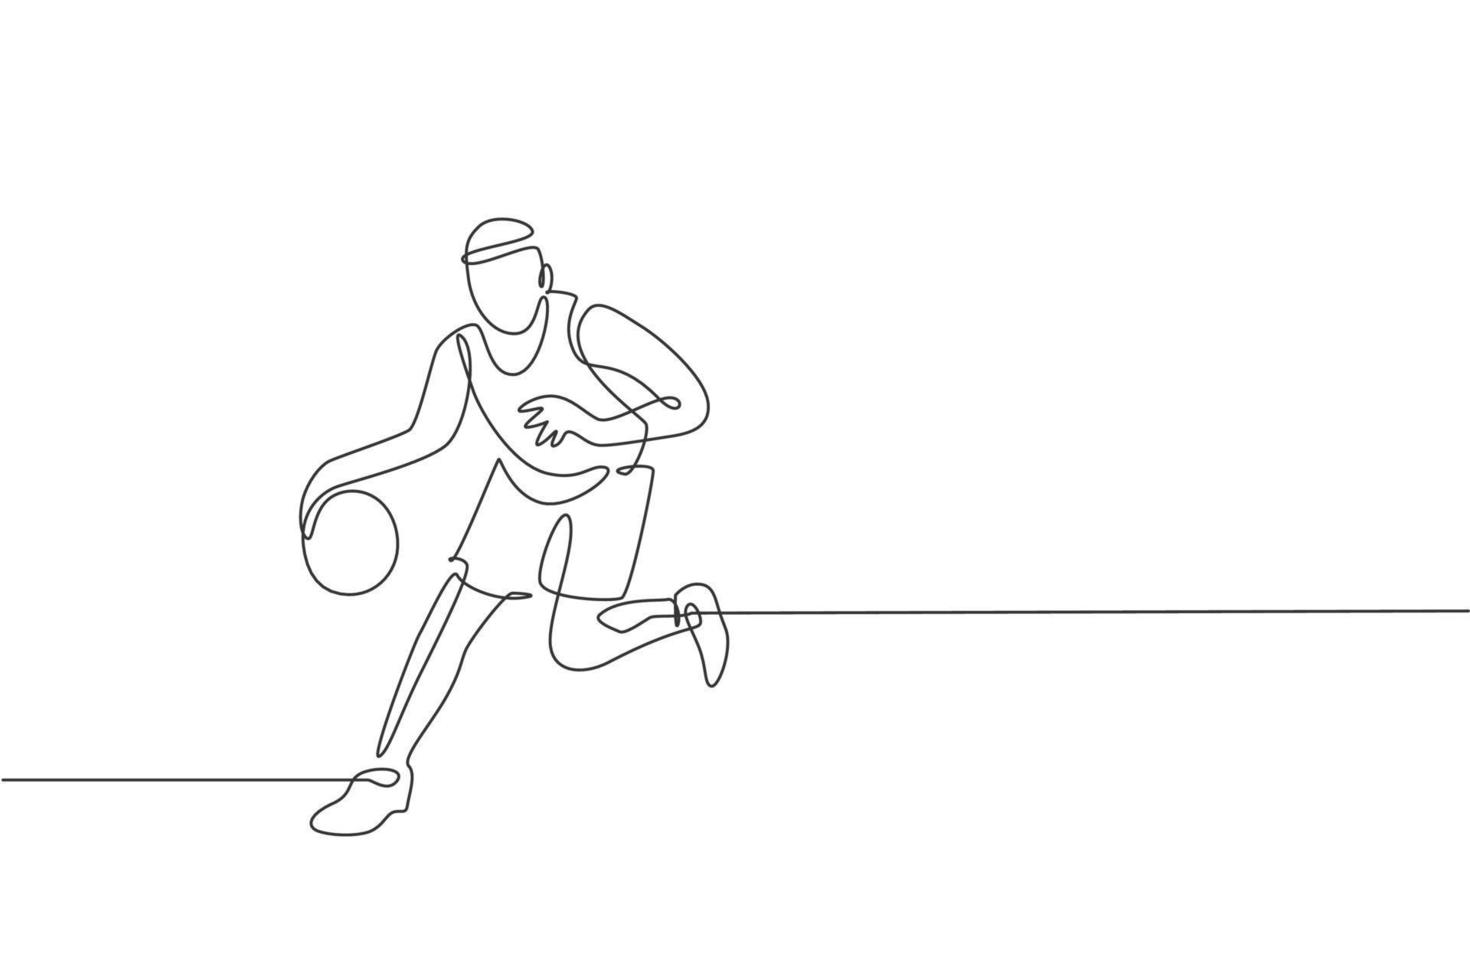 een doorlopende lijntekening van een jonge basketbalspeler die oefent en traint op het veld. teamsportconcept. dynamische enkele lijn tekenen ontwerp vectorillustratie voor kampioenschap wedstrijd poster vector